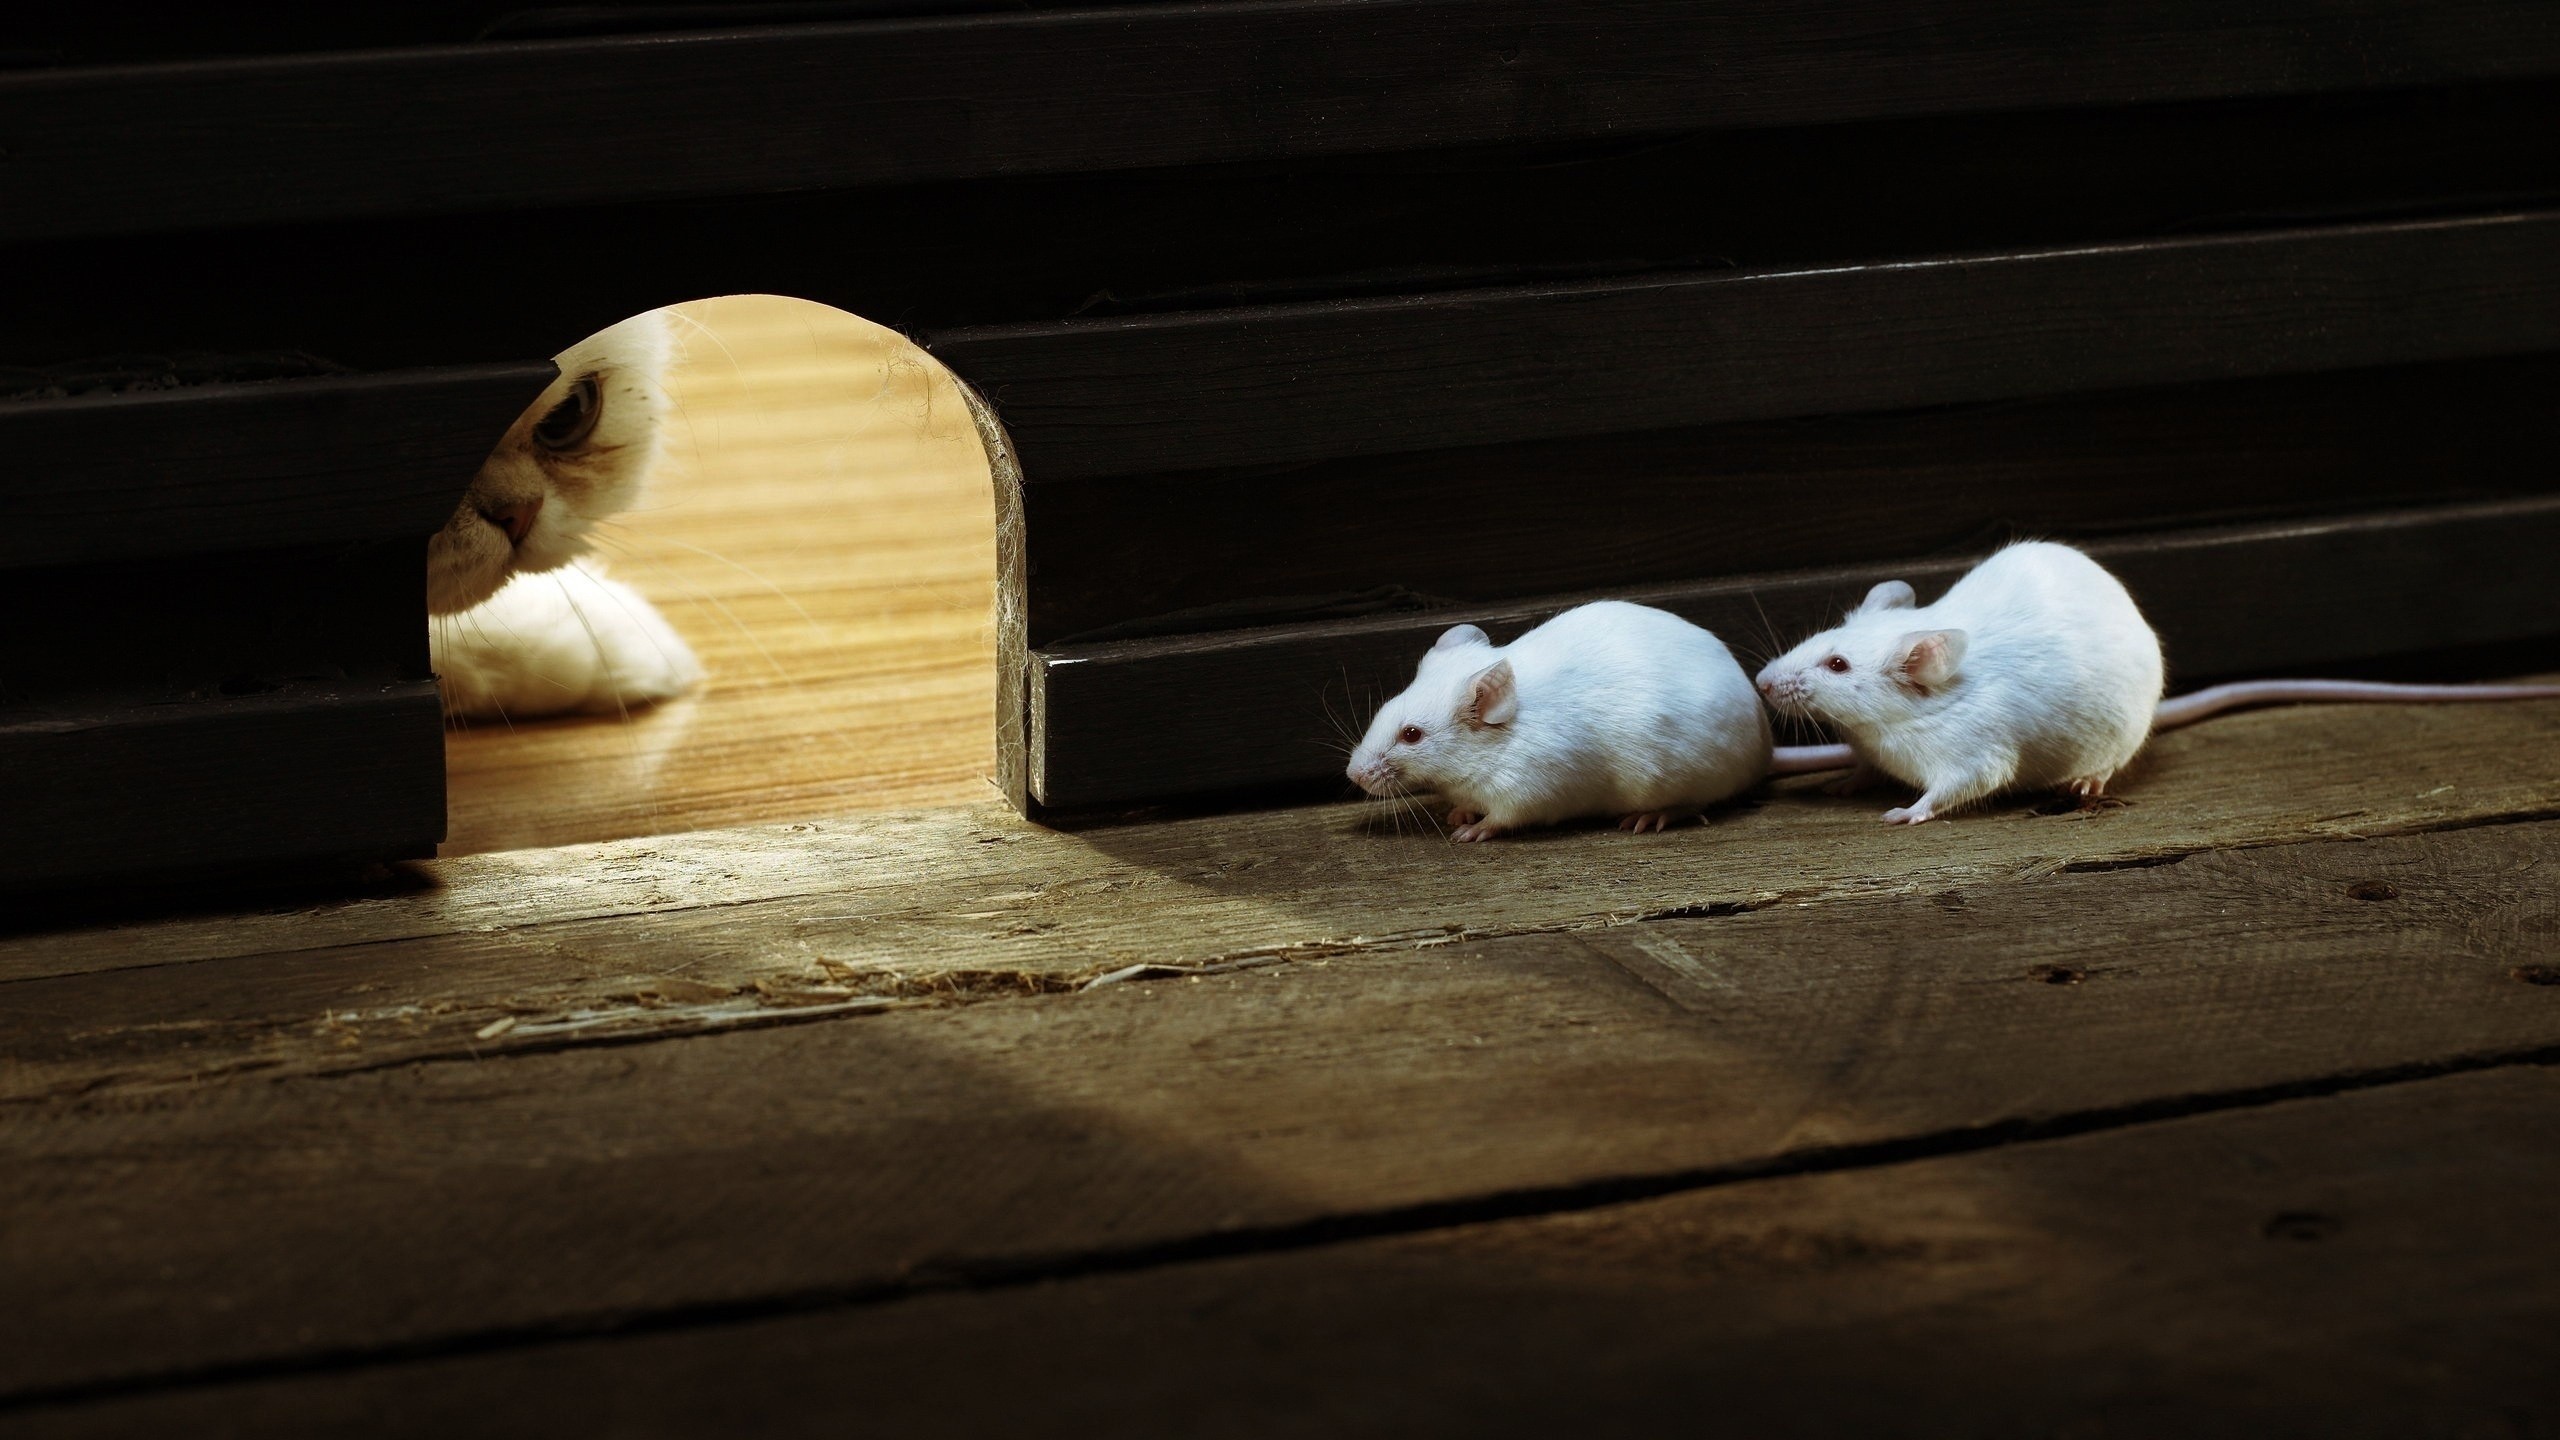 General 2560x1440 animals cats mice mammals closeup wooden floor